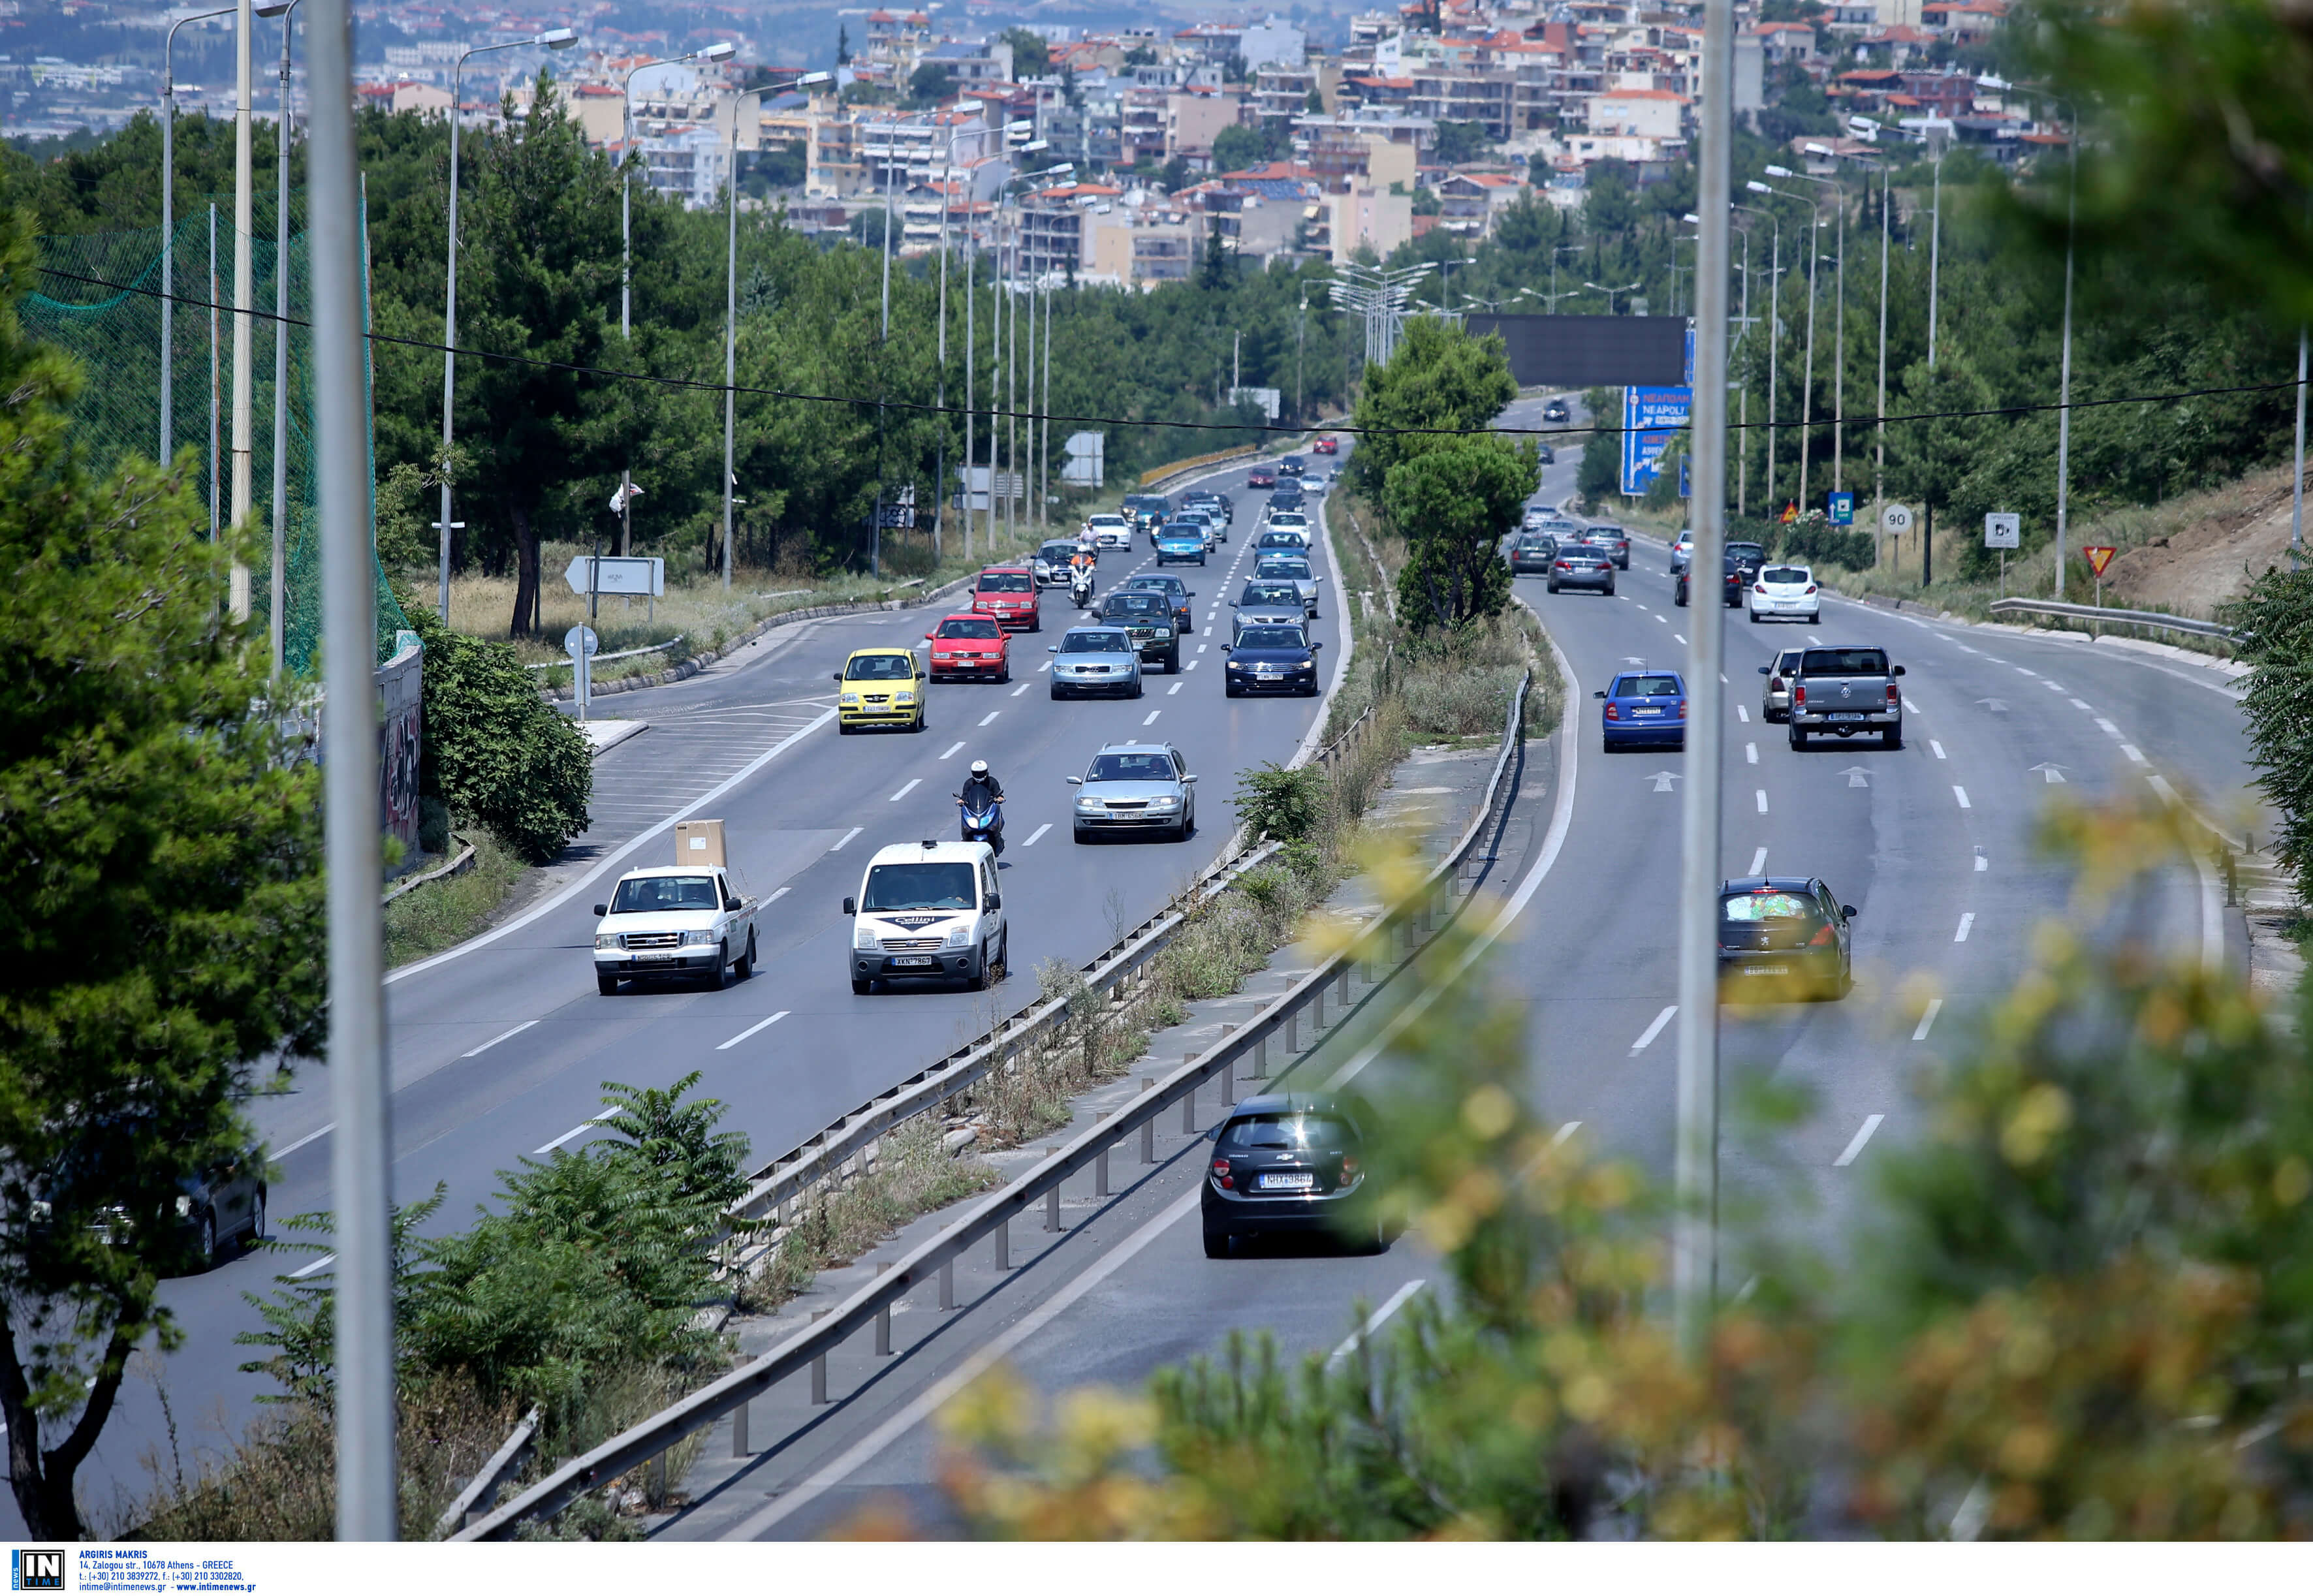 Θεσσαλονίκη: Σε εξέλιξη η έξοδος των εκδρομέων για την 25η Μάρτίου – Εντείνονται οι έλεγχοι της τροχαίας!